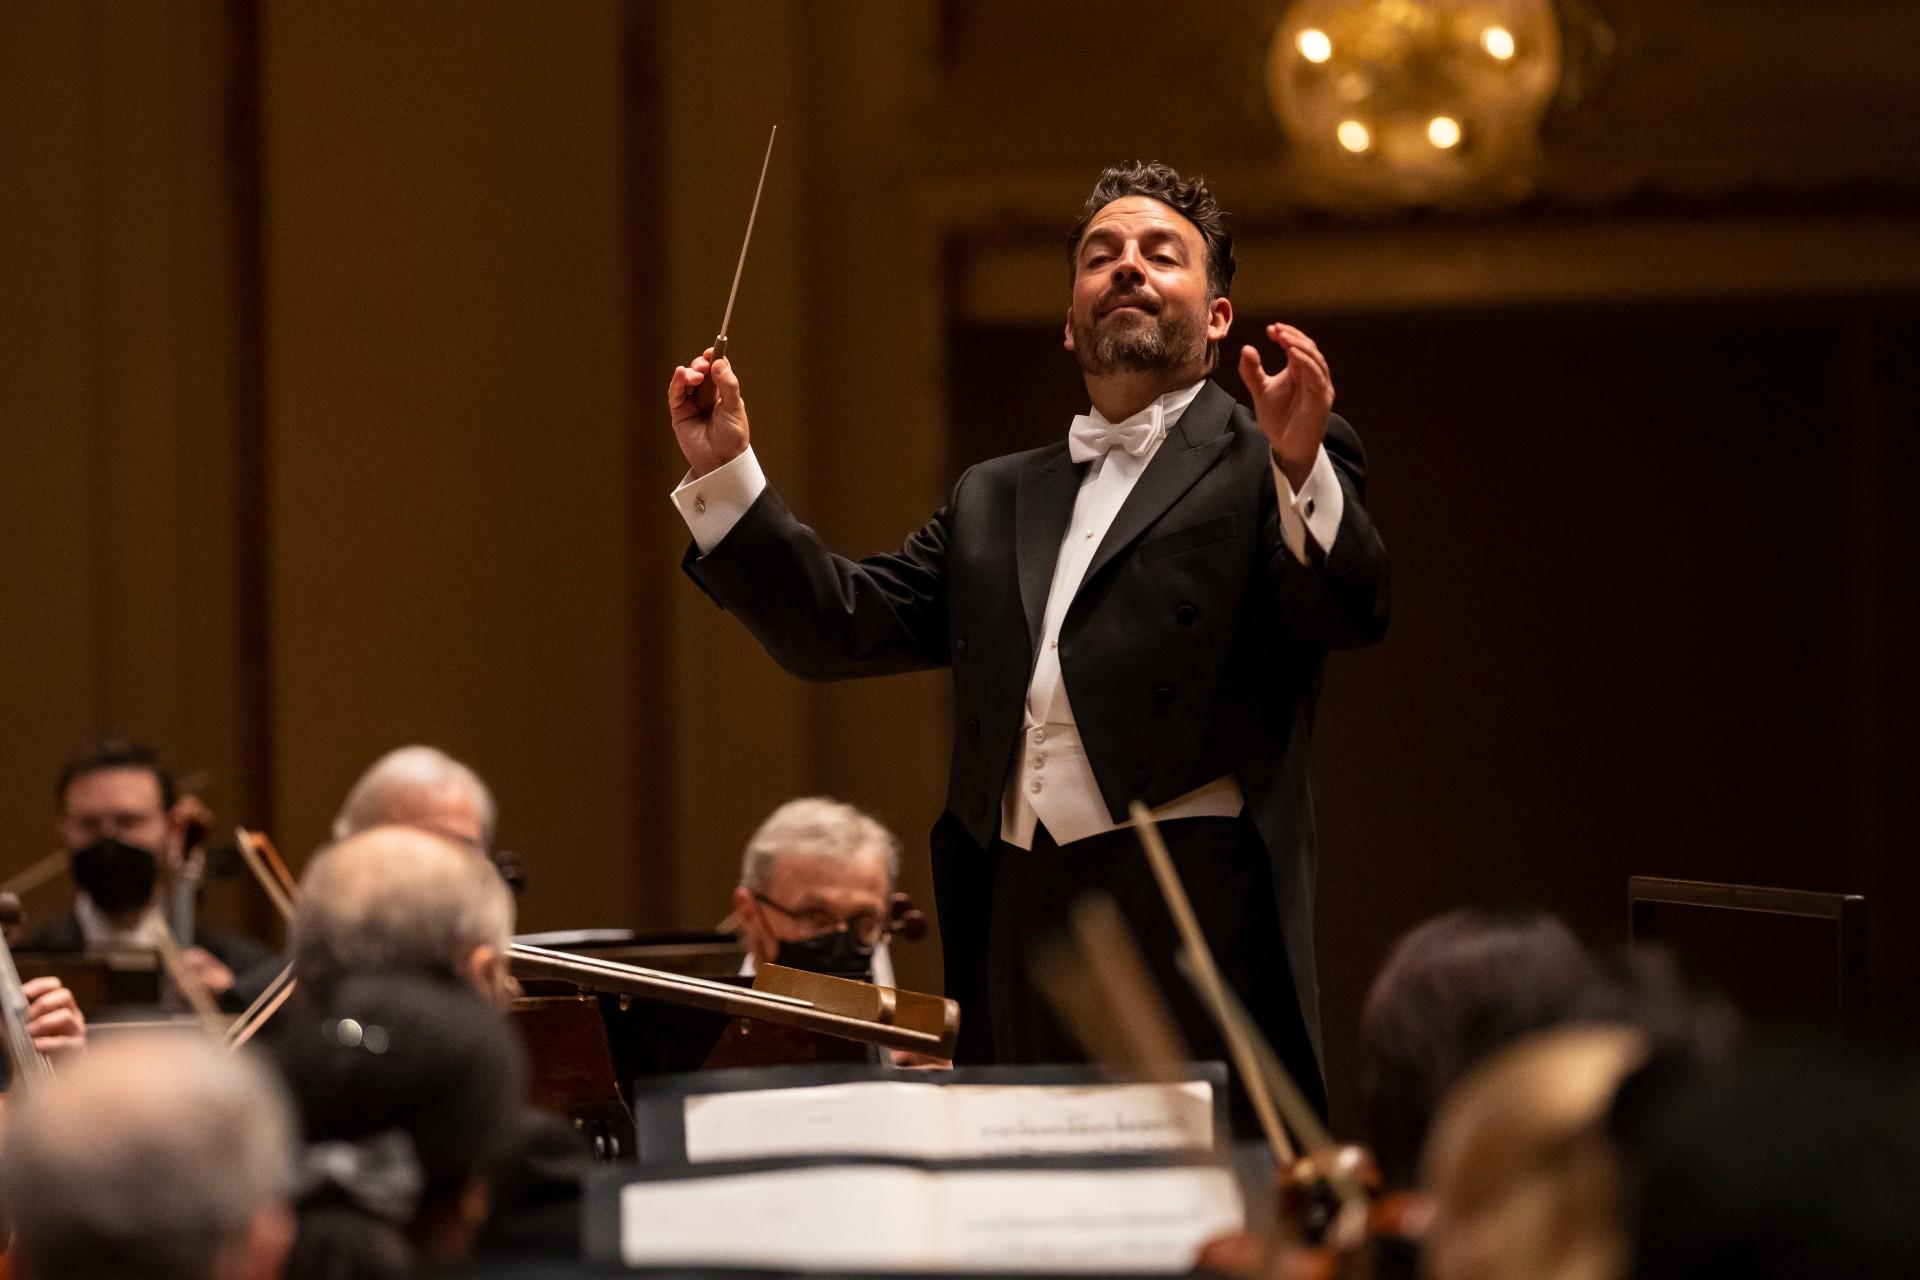 Ο μαέστρος James Gaffigan ηγείται της Συμφωνικής Ορχήστρας του Σικάγου σε ένα πρόγραμμα με έργα των Saint-Saëns, Saint-Saëns Mussorgsky (Orch. Rimsky-Korsakov) και Tchaikovsky.  (Φωτογραφία: Todd Rosenberg)